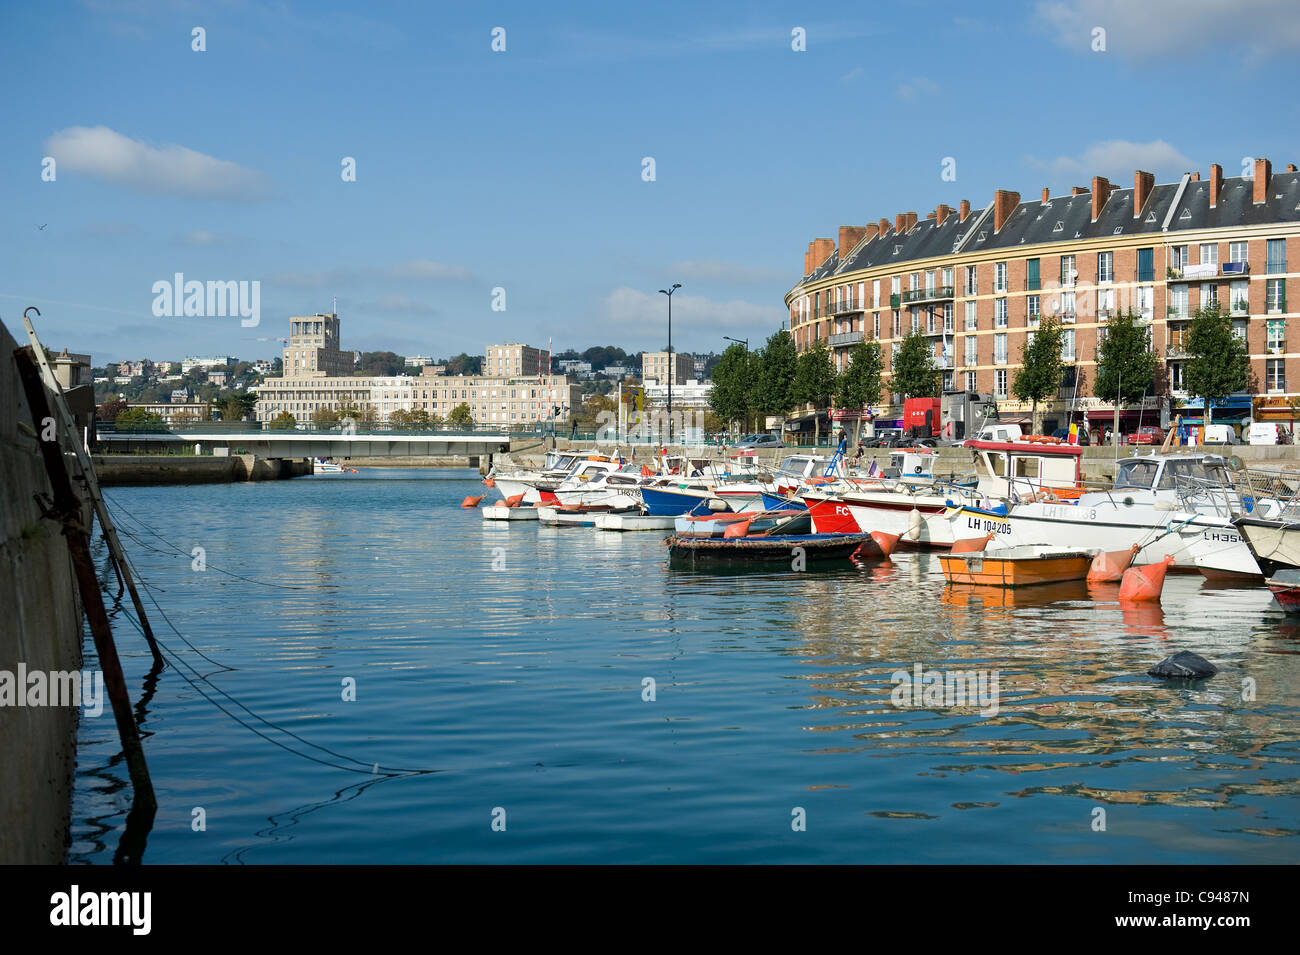 Los barcos de pesca y yates a motor en el Bassin du roi, antiguo puerto de Le Havre, ciudad patrimonio de la humanidad de la UNESCO en Normandía, Francia Foto de stock